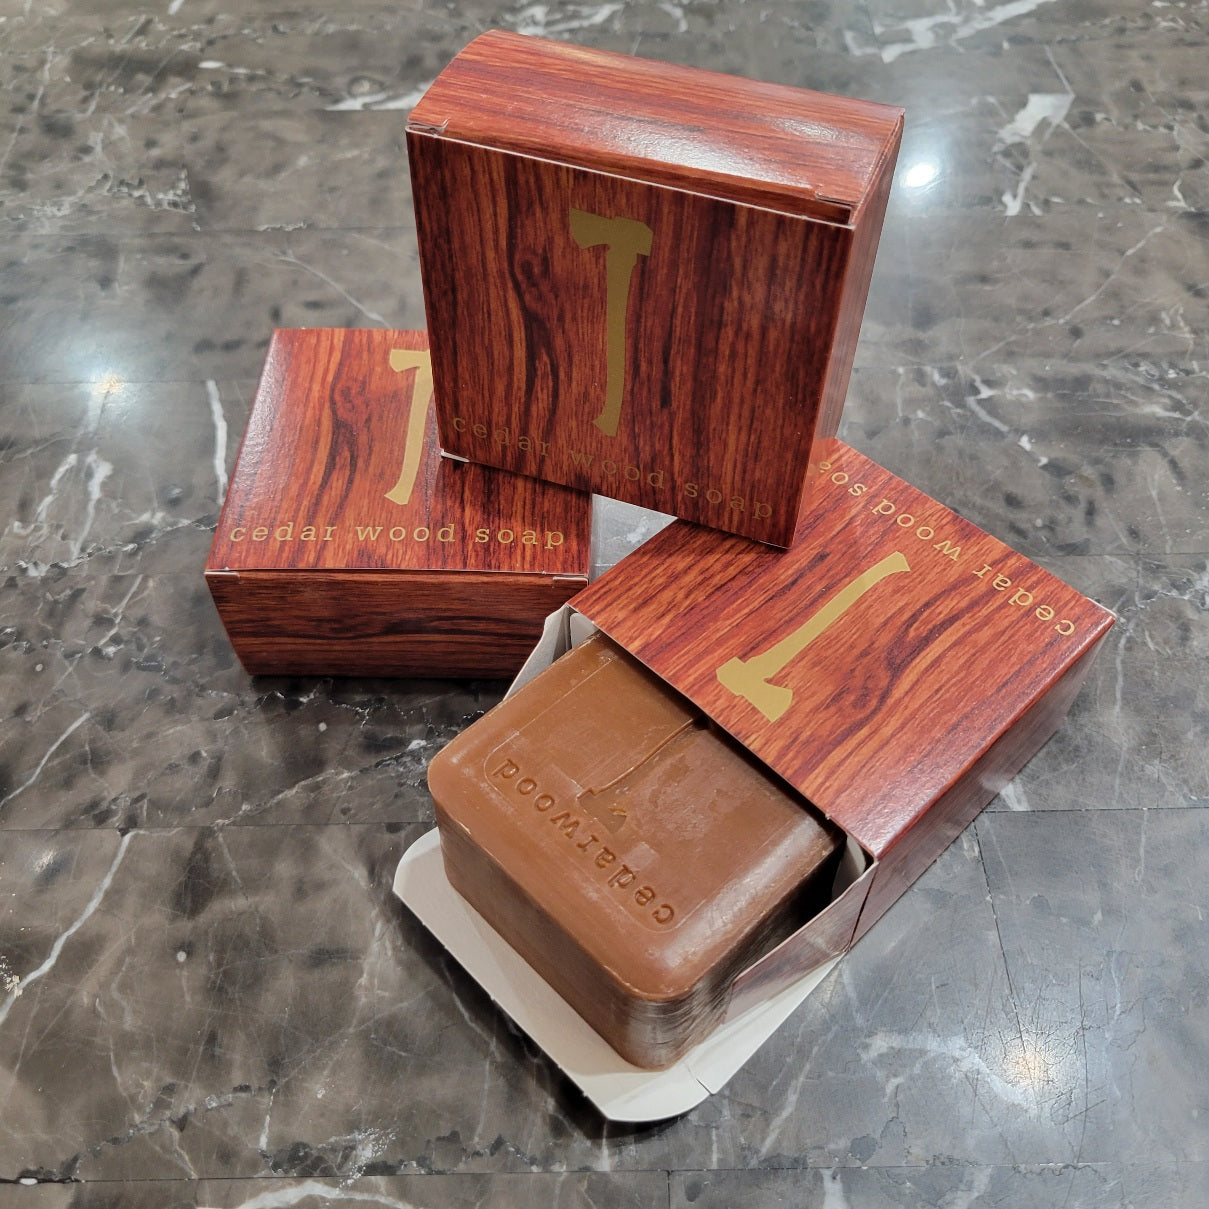 Soap: Cedar Wood Soap